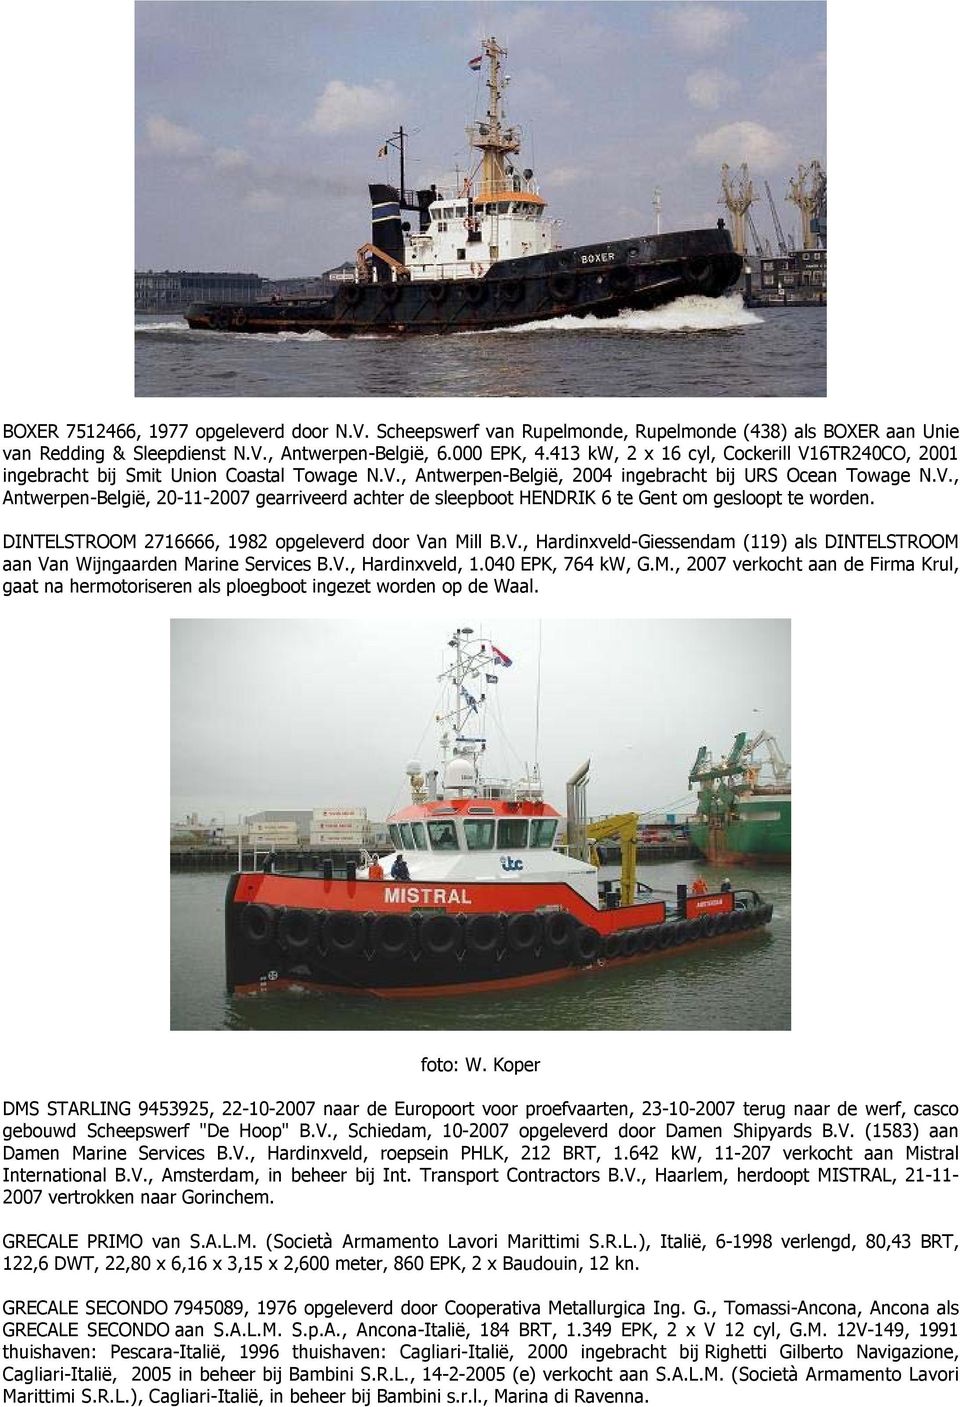 DINTELSTROOM 2716666, 1982 opgeleverd door Van Mill B.V., Hardinxveld-Giessendam (119) als DINTELSTROOM aan Van Wijngaarden Marine Services B.V., Hardinxveld, 1.040 EPK, 764 kw, G.M., 2007 verkocht aan de Firma Krul, gaat na hermotoriseren als ploegboot ingezet worden op de Waal.